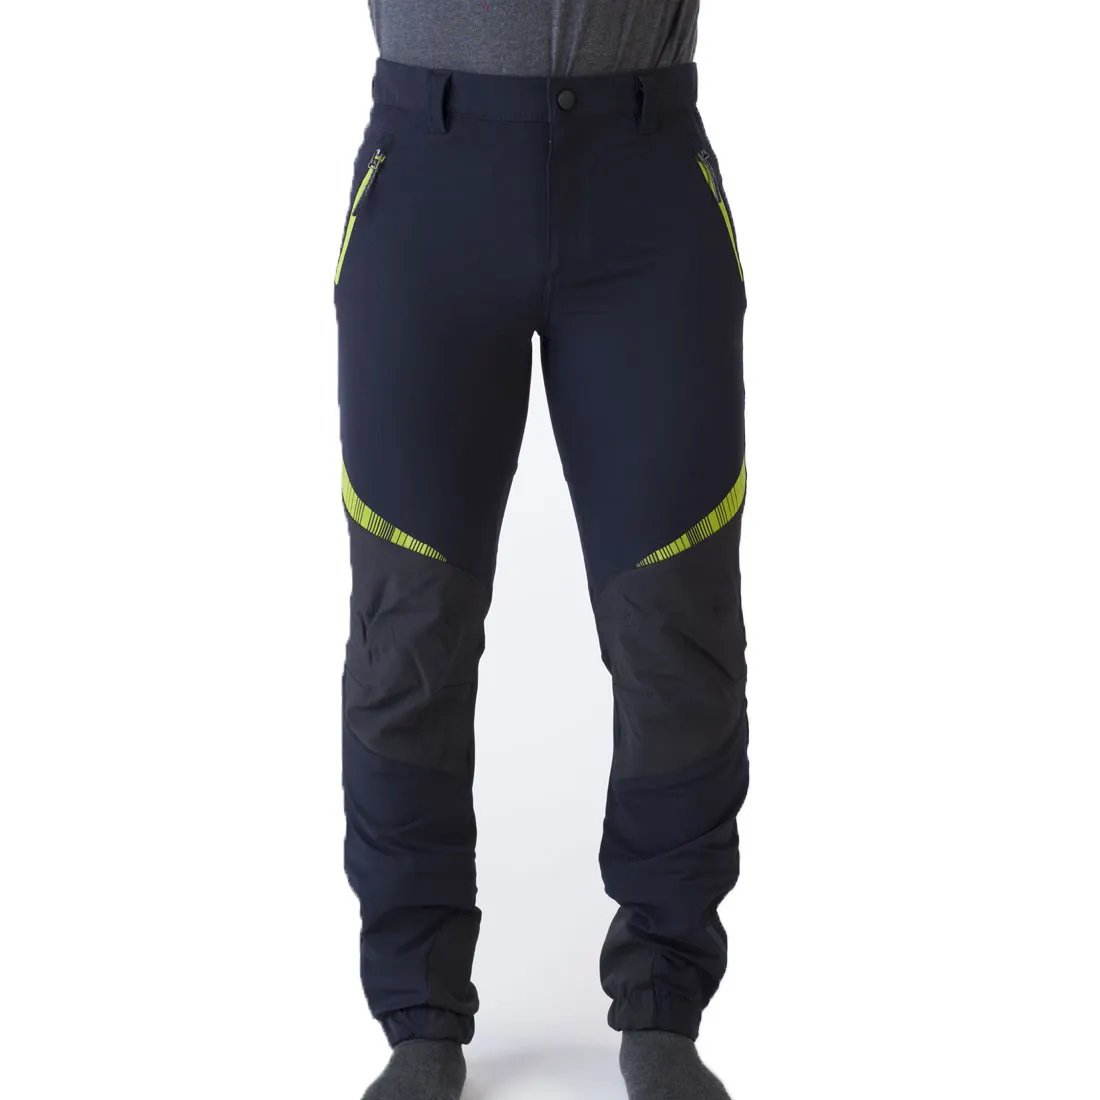 Bluexign calça de acampamento com 4 vias, tecido elástico, secagem rápida, marca italiana, calças para caminhadas